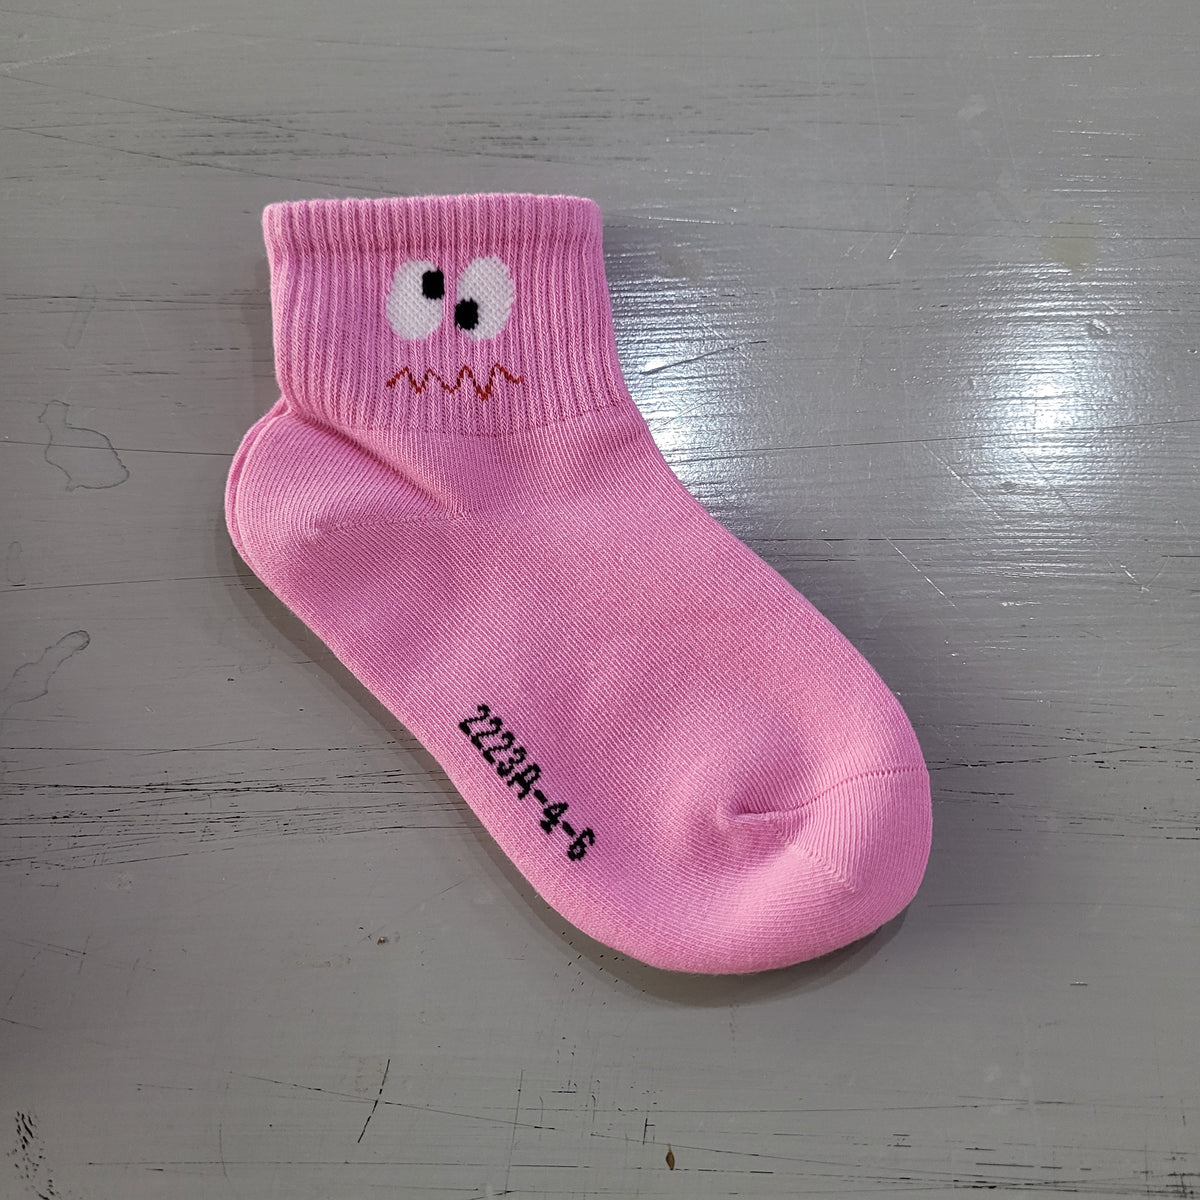 Pink Dinosaurs Kids' Socks  Fun Novelty Socks for Children - Cute But  Crazy Socks